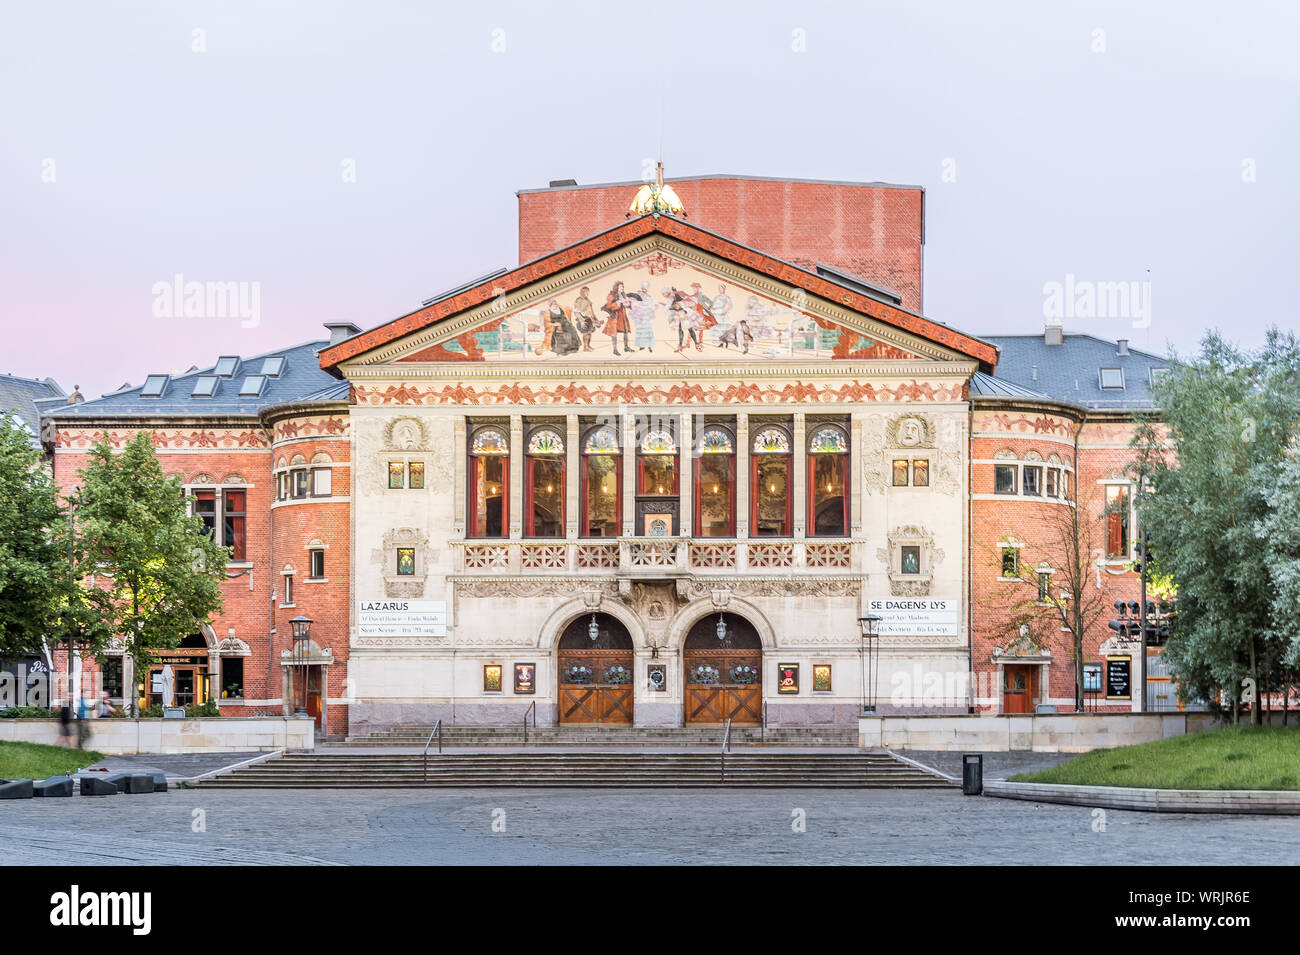 Théâtre d'Aarhus avec une façade ornée dans la douce lumière du soir, inauguré en 1900, au Danemark. 15 juillet 2019 Banque D'Images